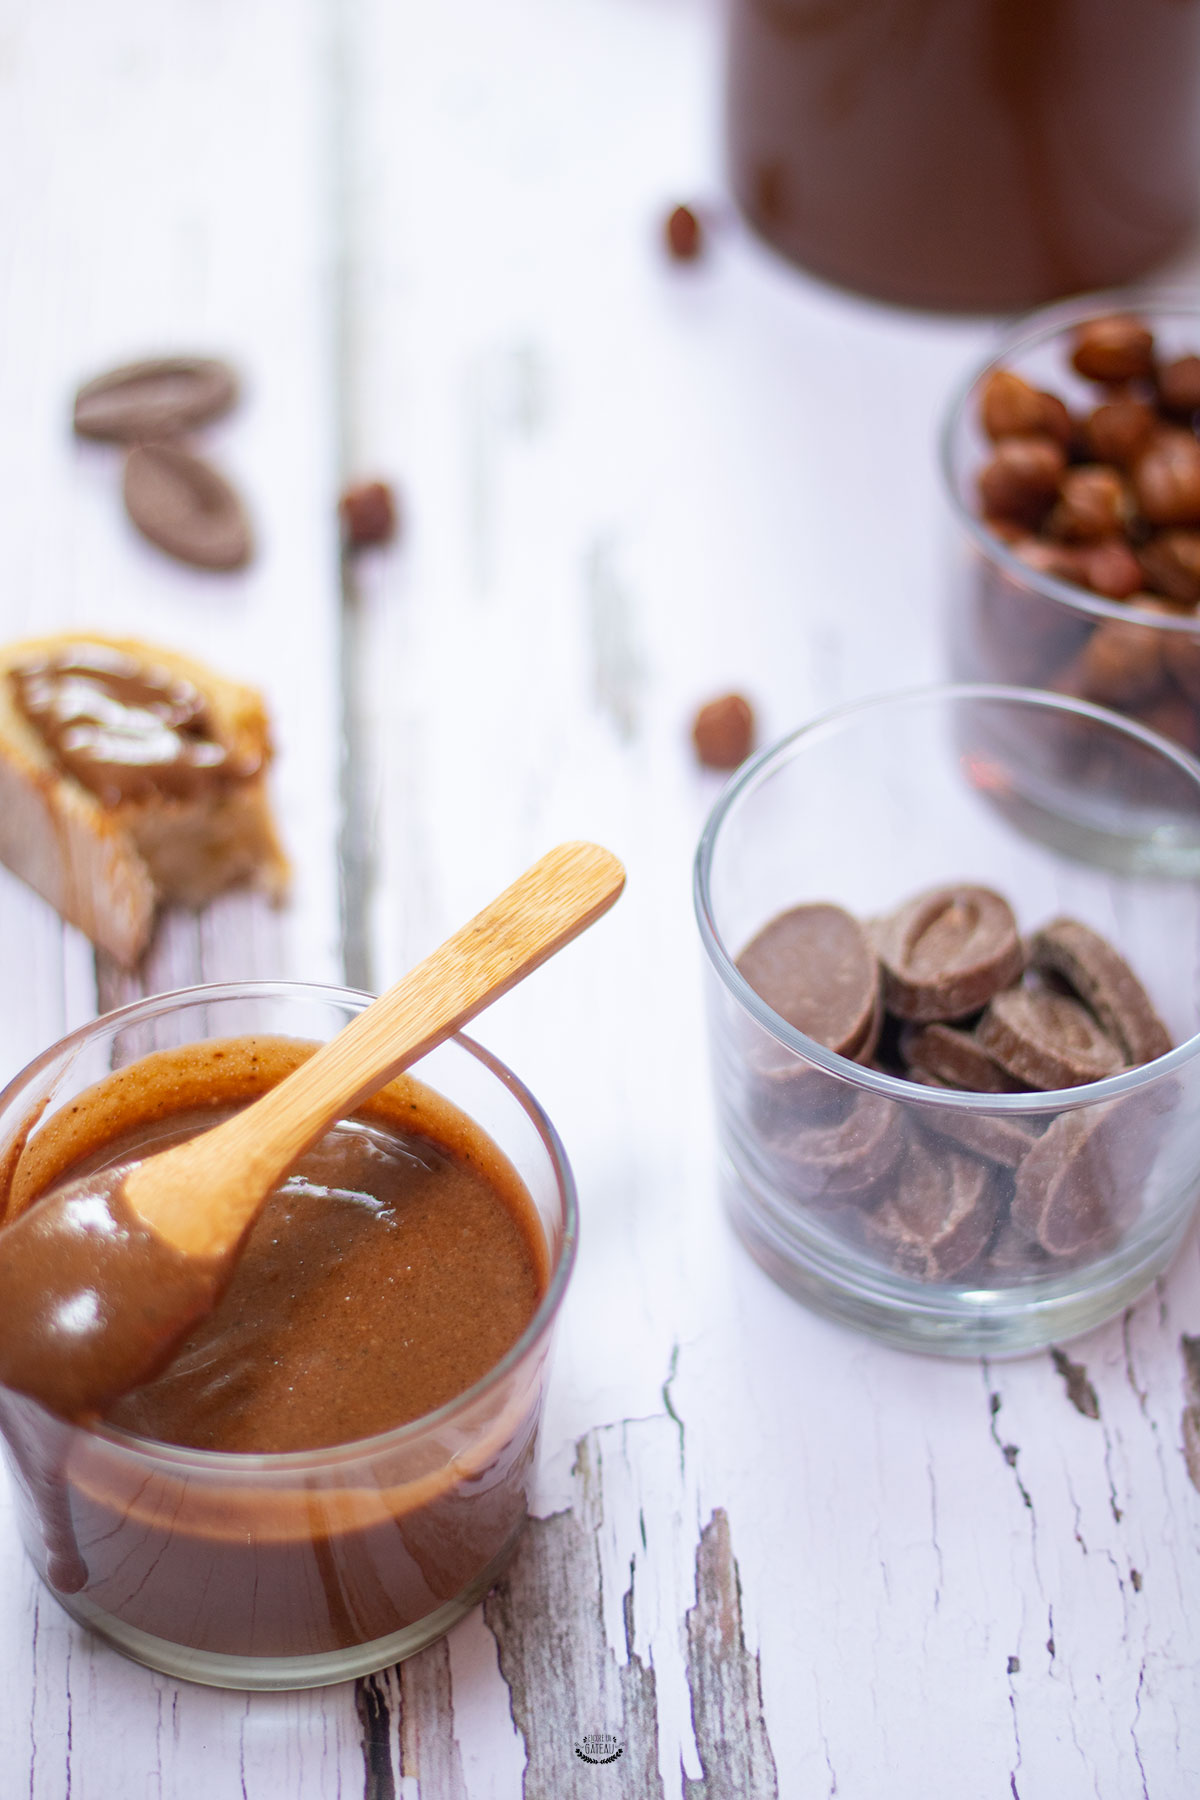 Recette Pâte à tartiner chocolat noisettes façon nutella - La cuisine  familiale : Un plat, Une recette